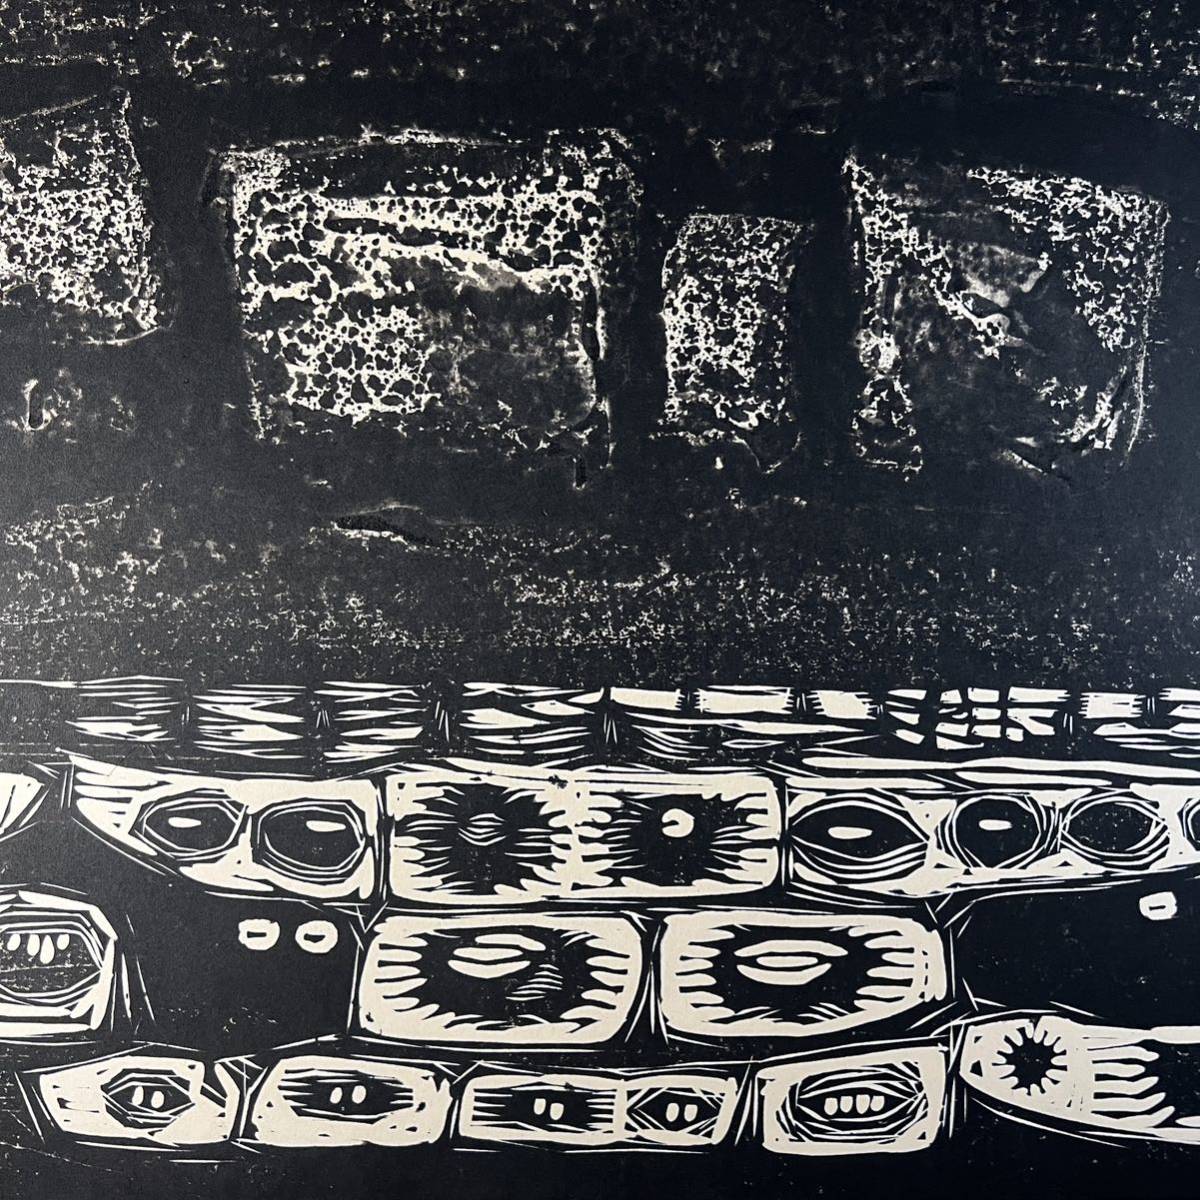 真作 手島圭三郎 『残雪』 木版画 1964年1月10日作 道版展会員 直筆サイン入り 直筆裏書きあり 絵本作家 版画_画像6